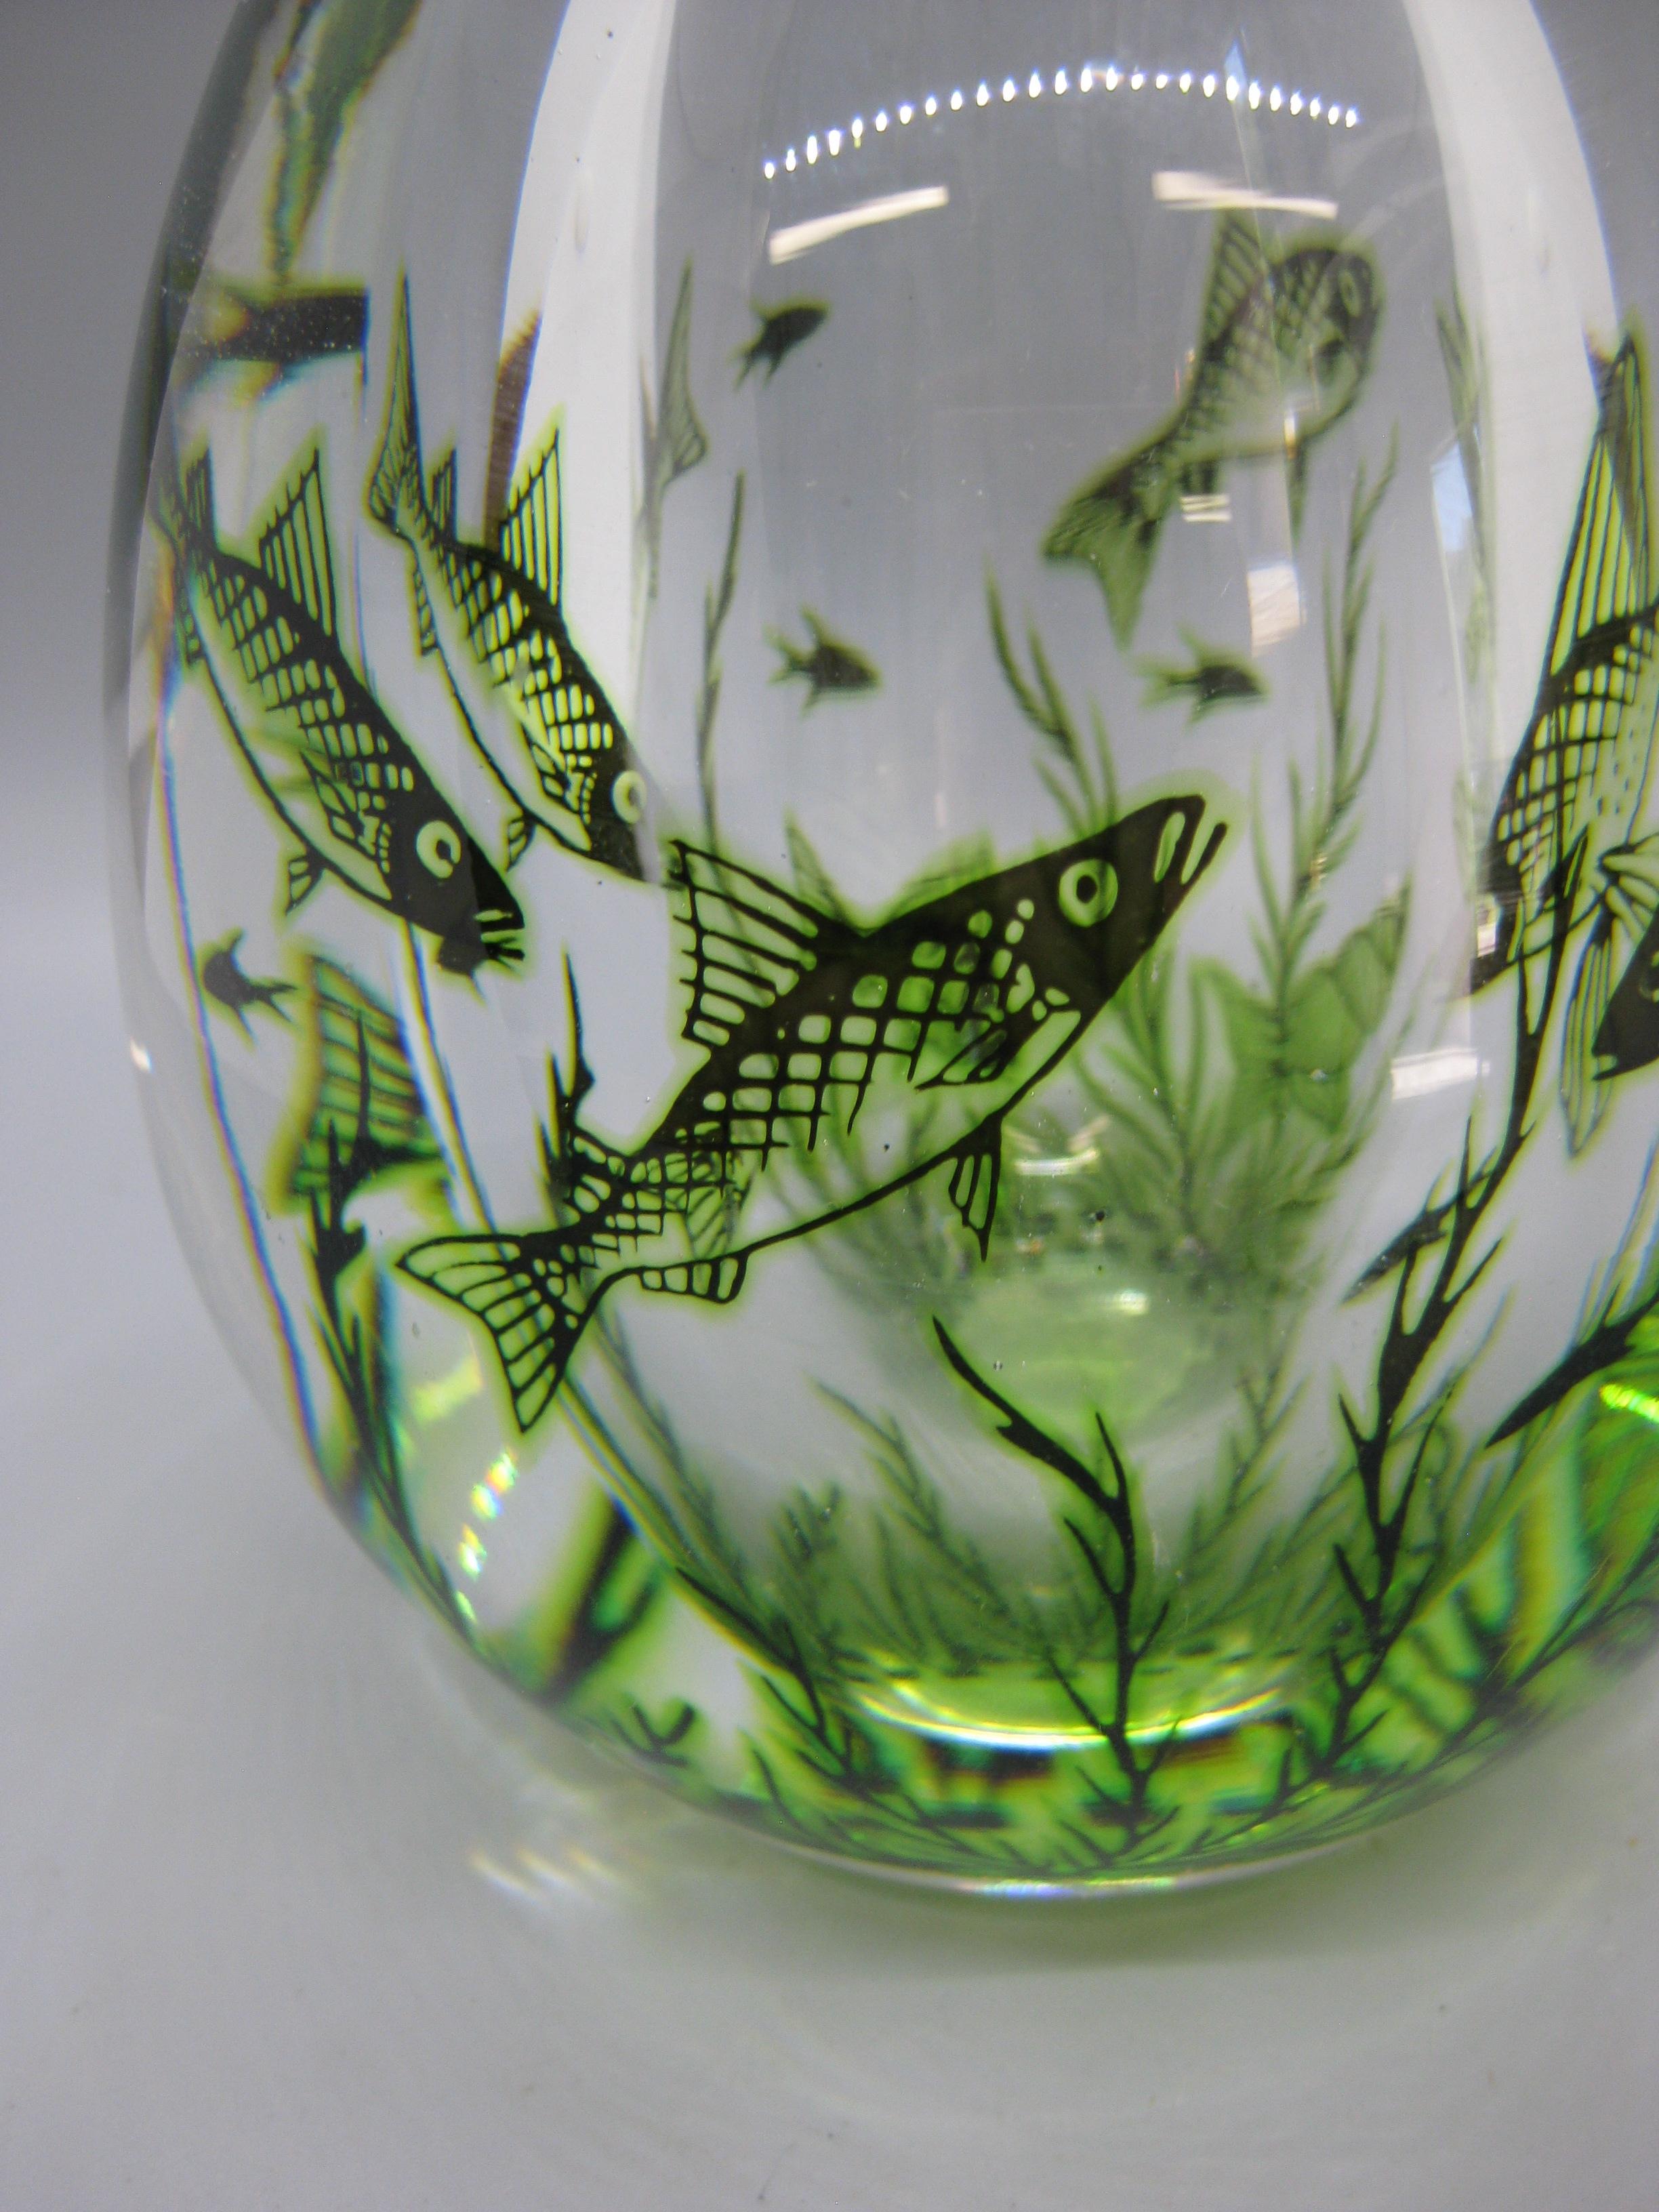 Magnifique vase en verre d'art Grall fish Edward Hald pour Orrefors et datant des années 1940 au début des années 1950. Superbe conception et forme. Signé en bas par l'artiste. En excellent état pour son âge.  Aucune fissure, aucune réparation et